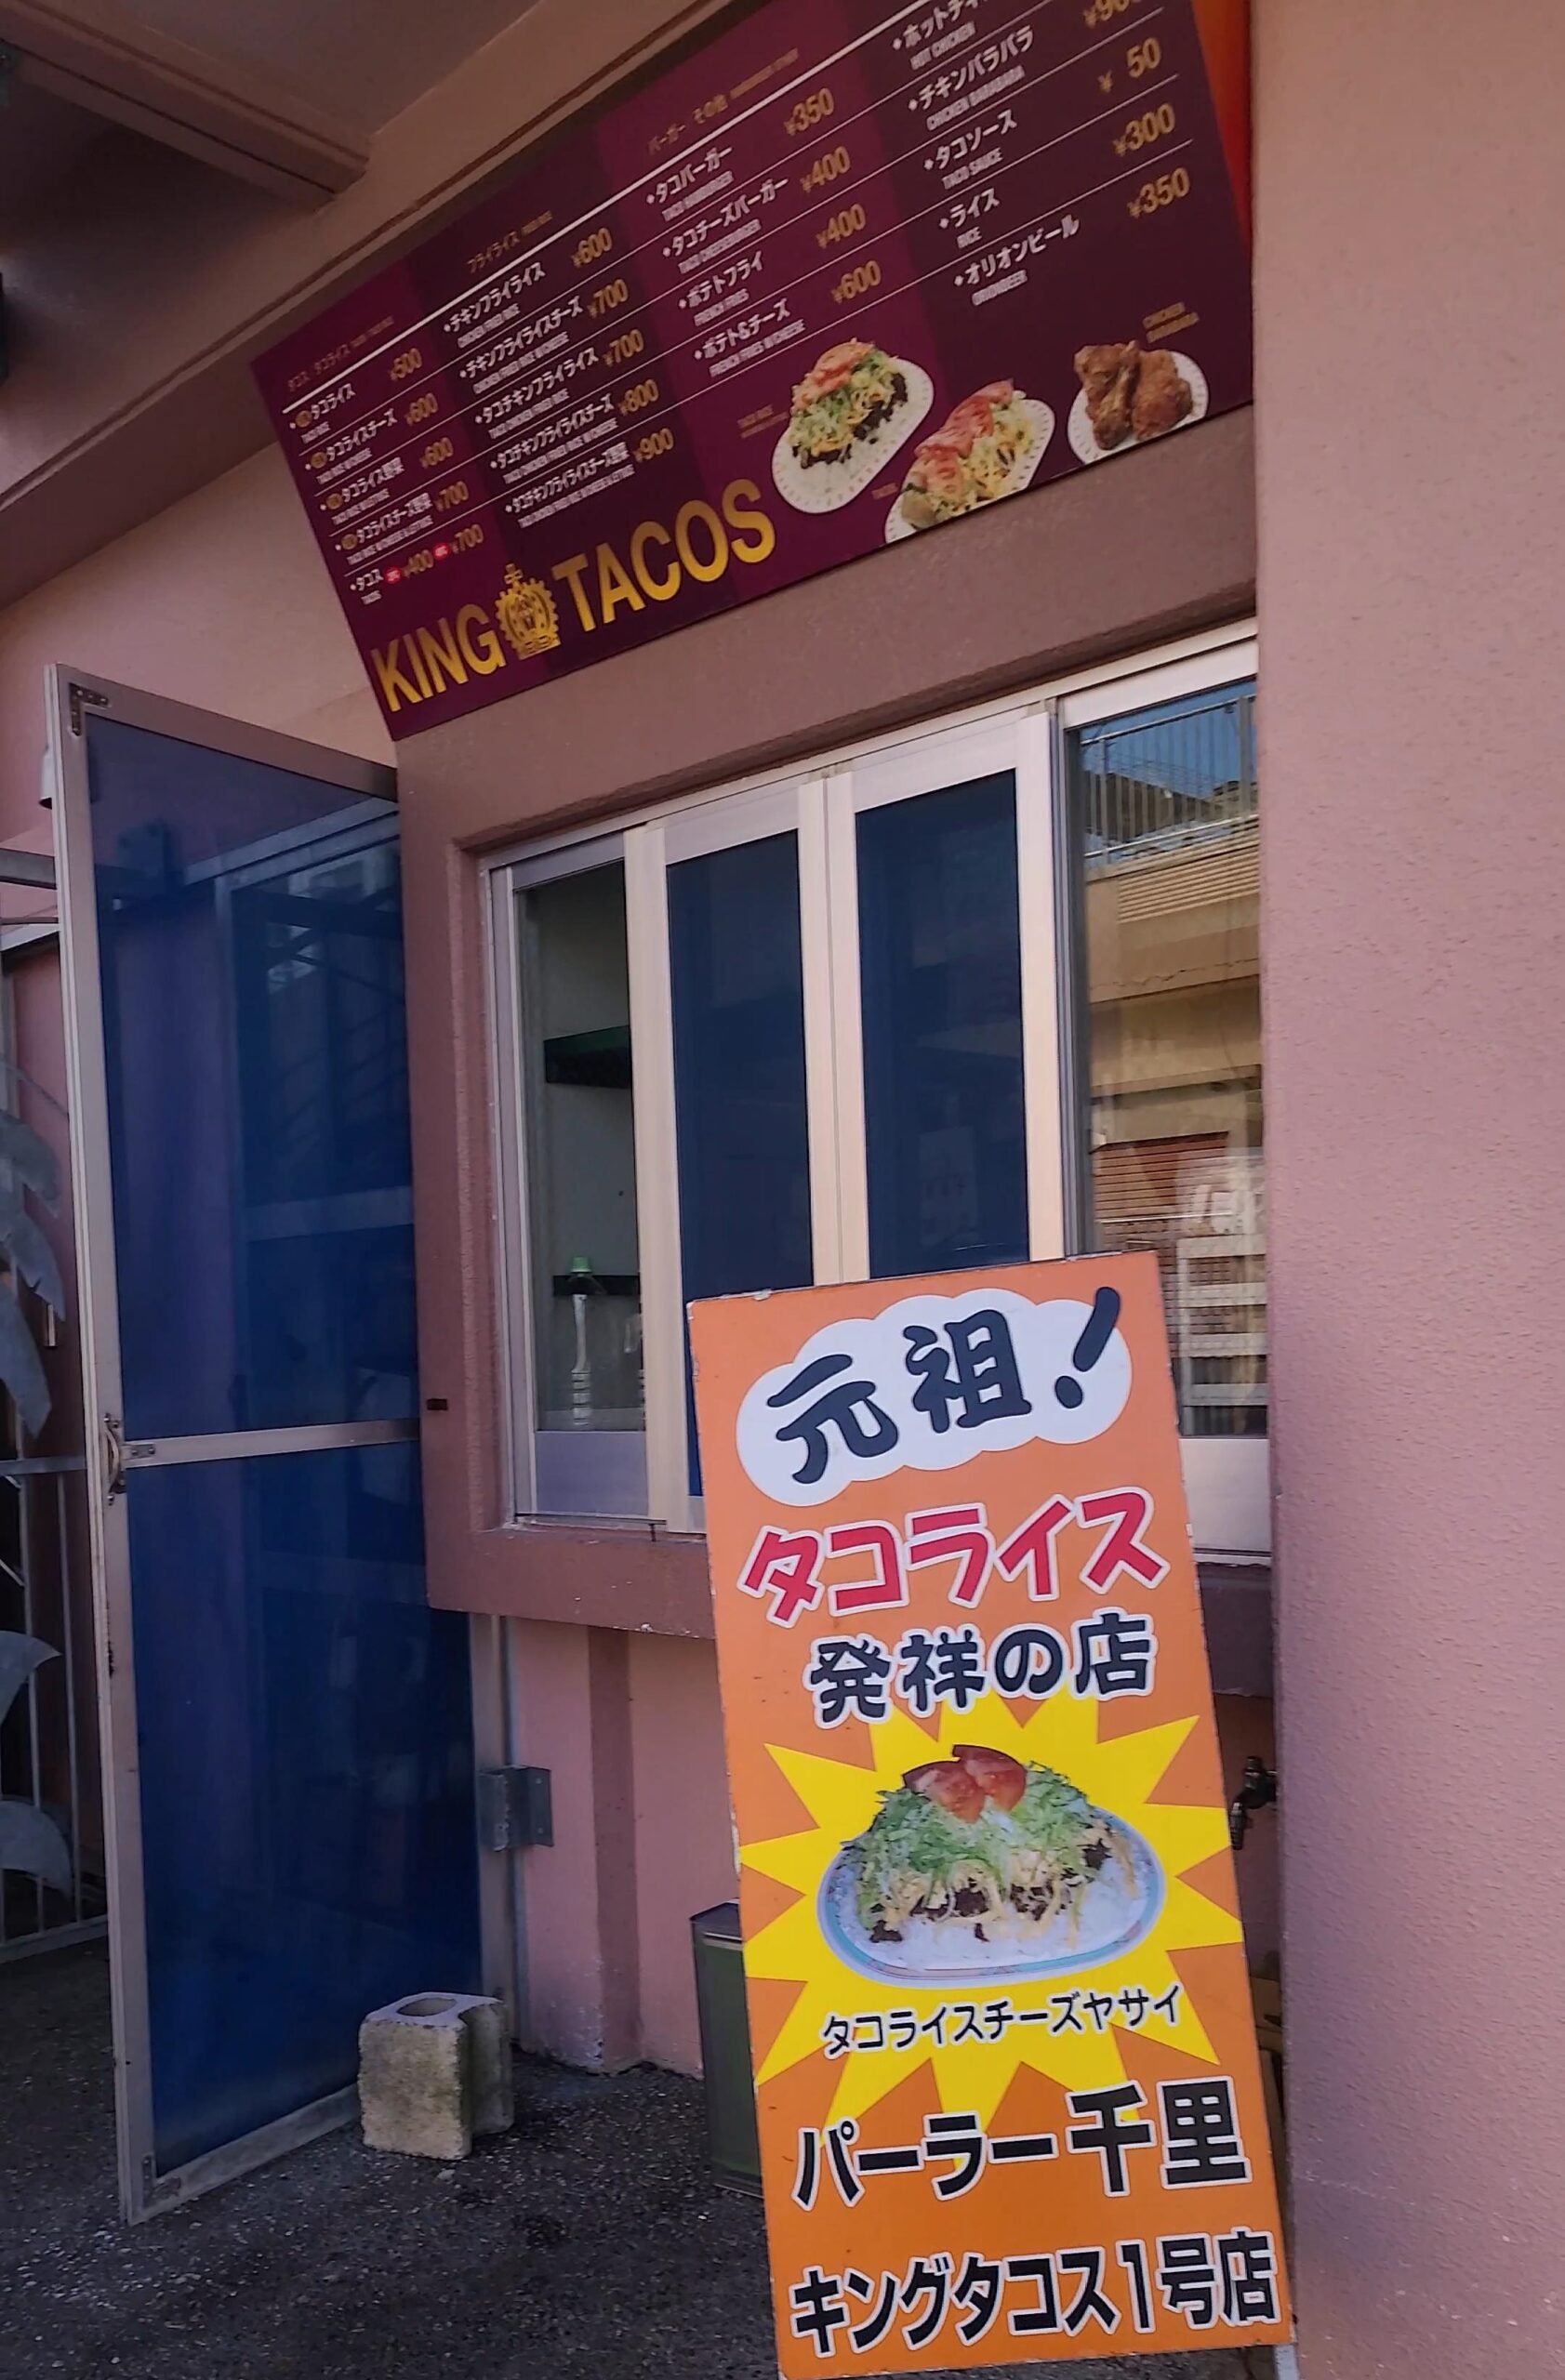 沖縄グルメタコライス発症にt金武町にあるキングタコス本店